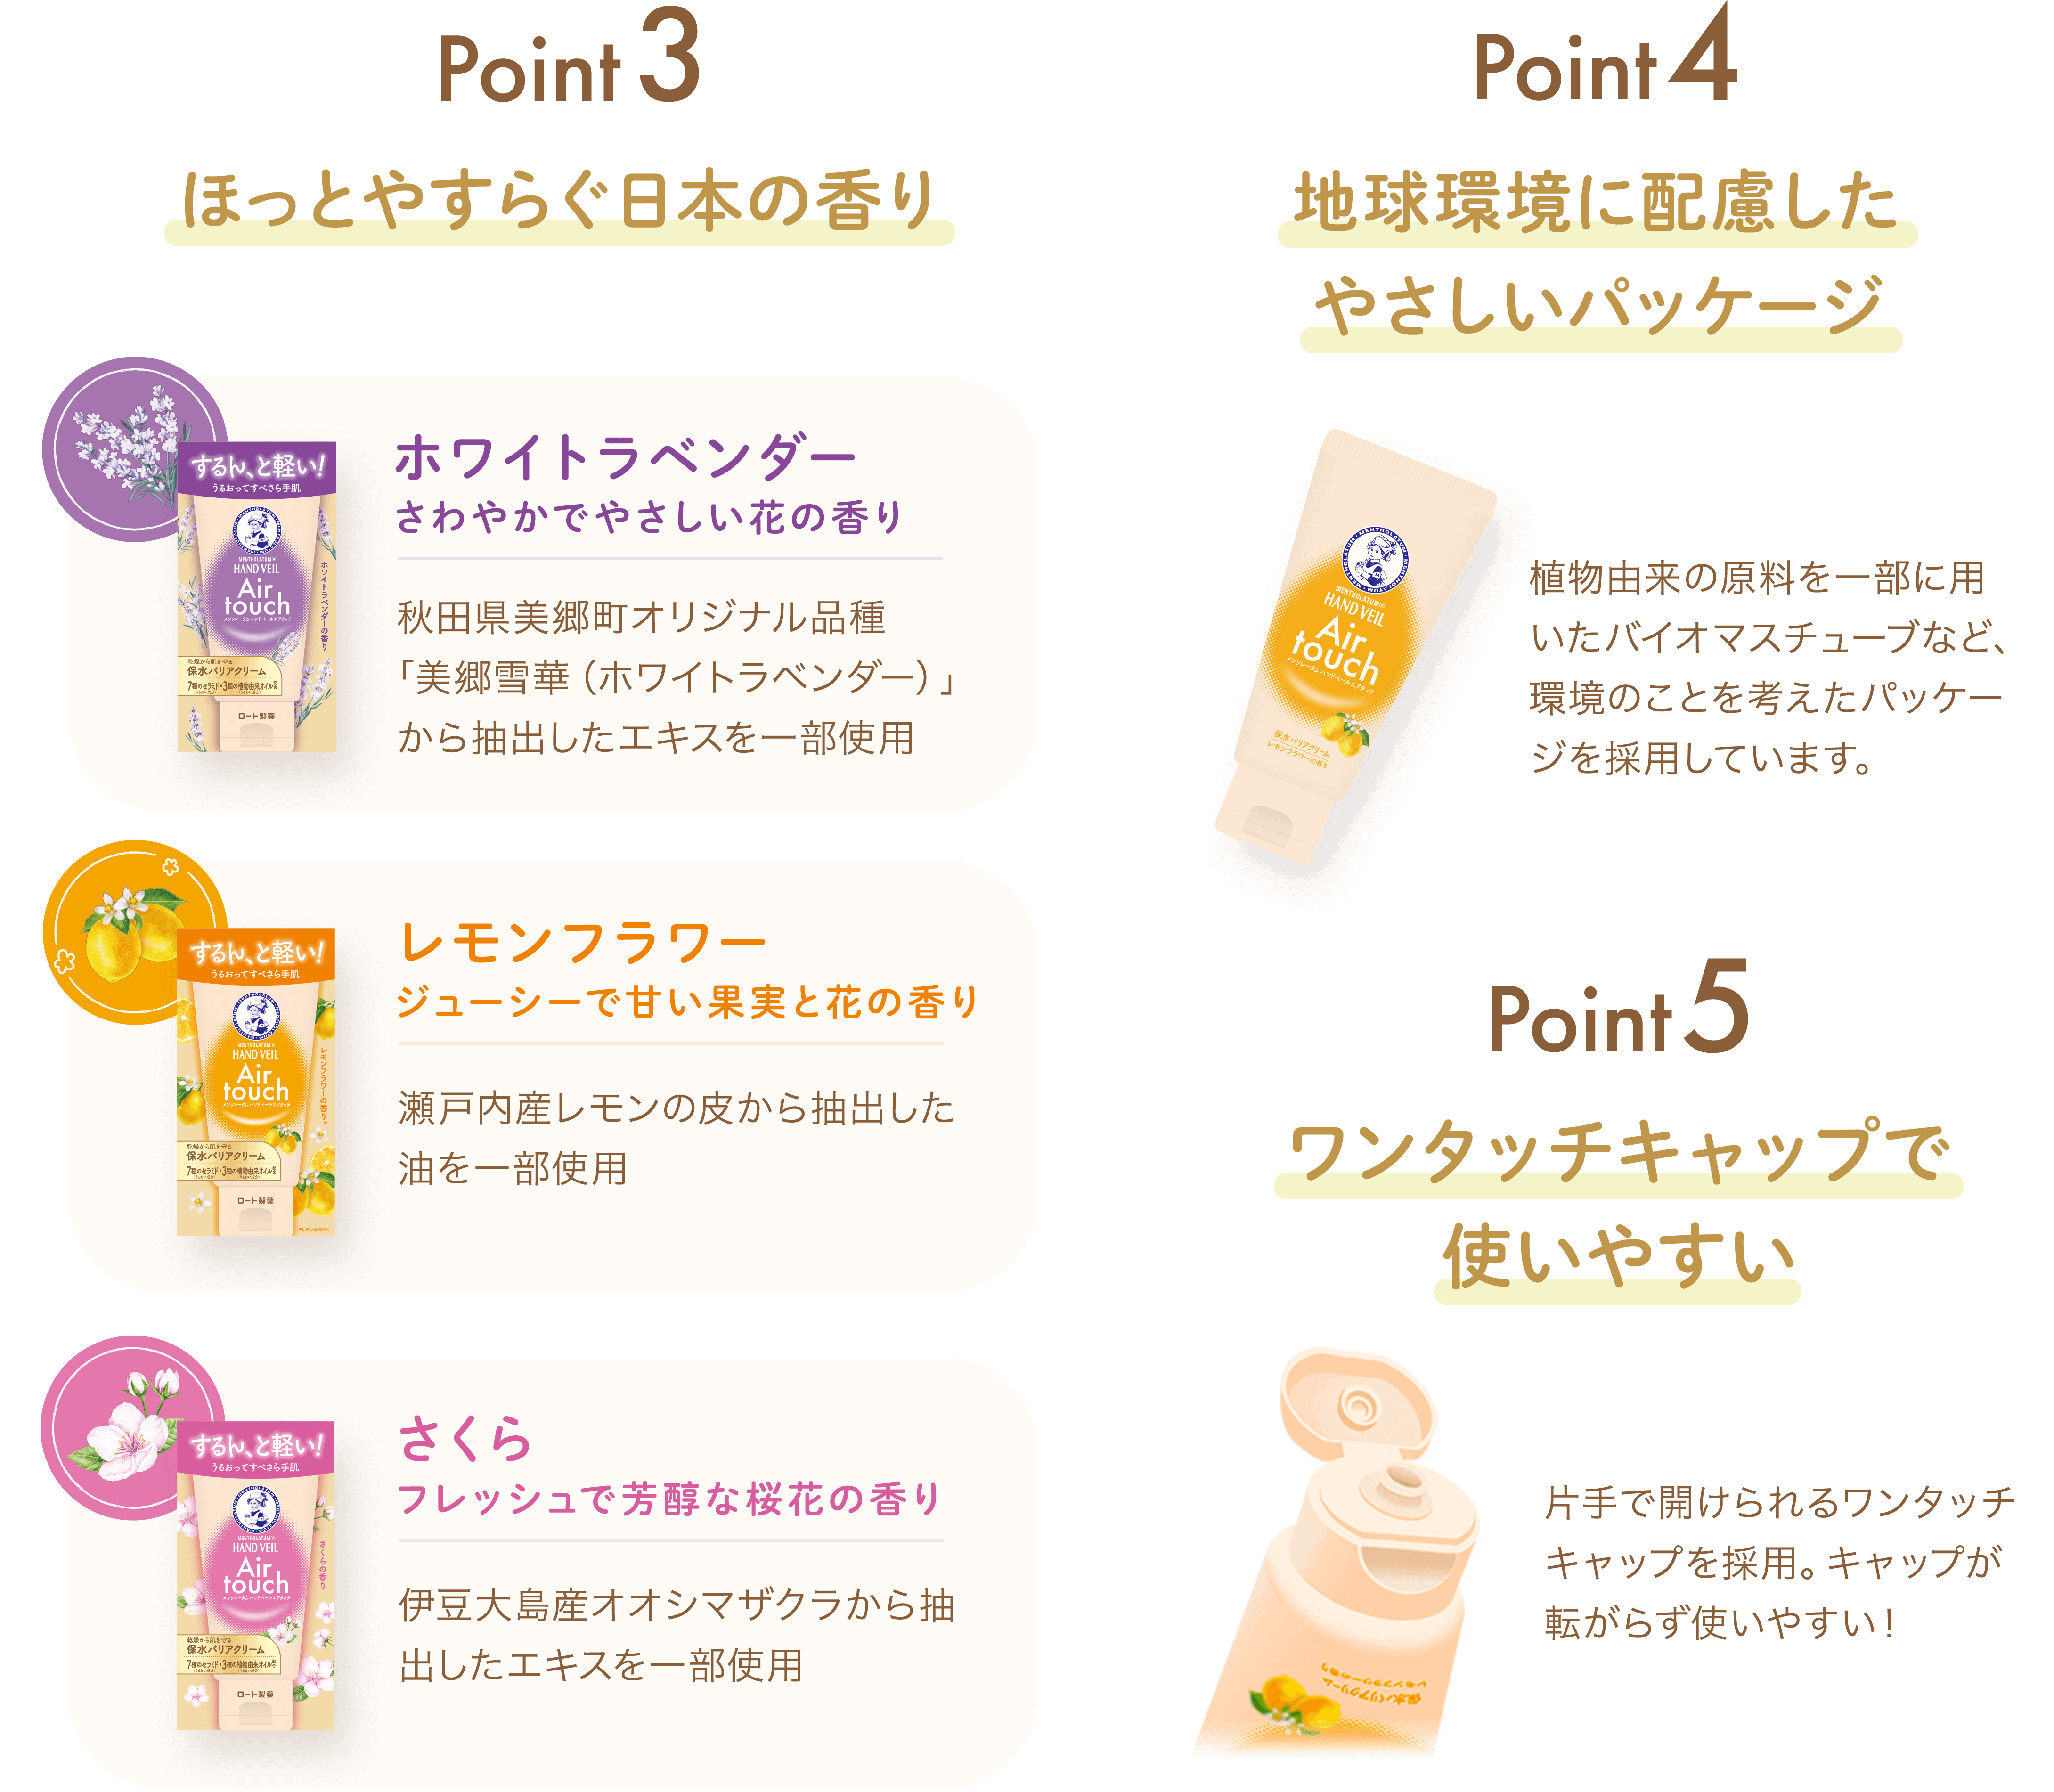 Point 3 ほっとやすらぐ日本の香り Point 4 地球環境に配慮した Point 5 使いやすい ワンタッチキャップで